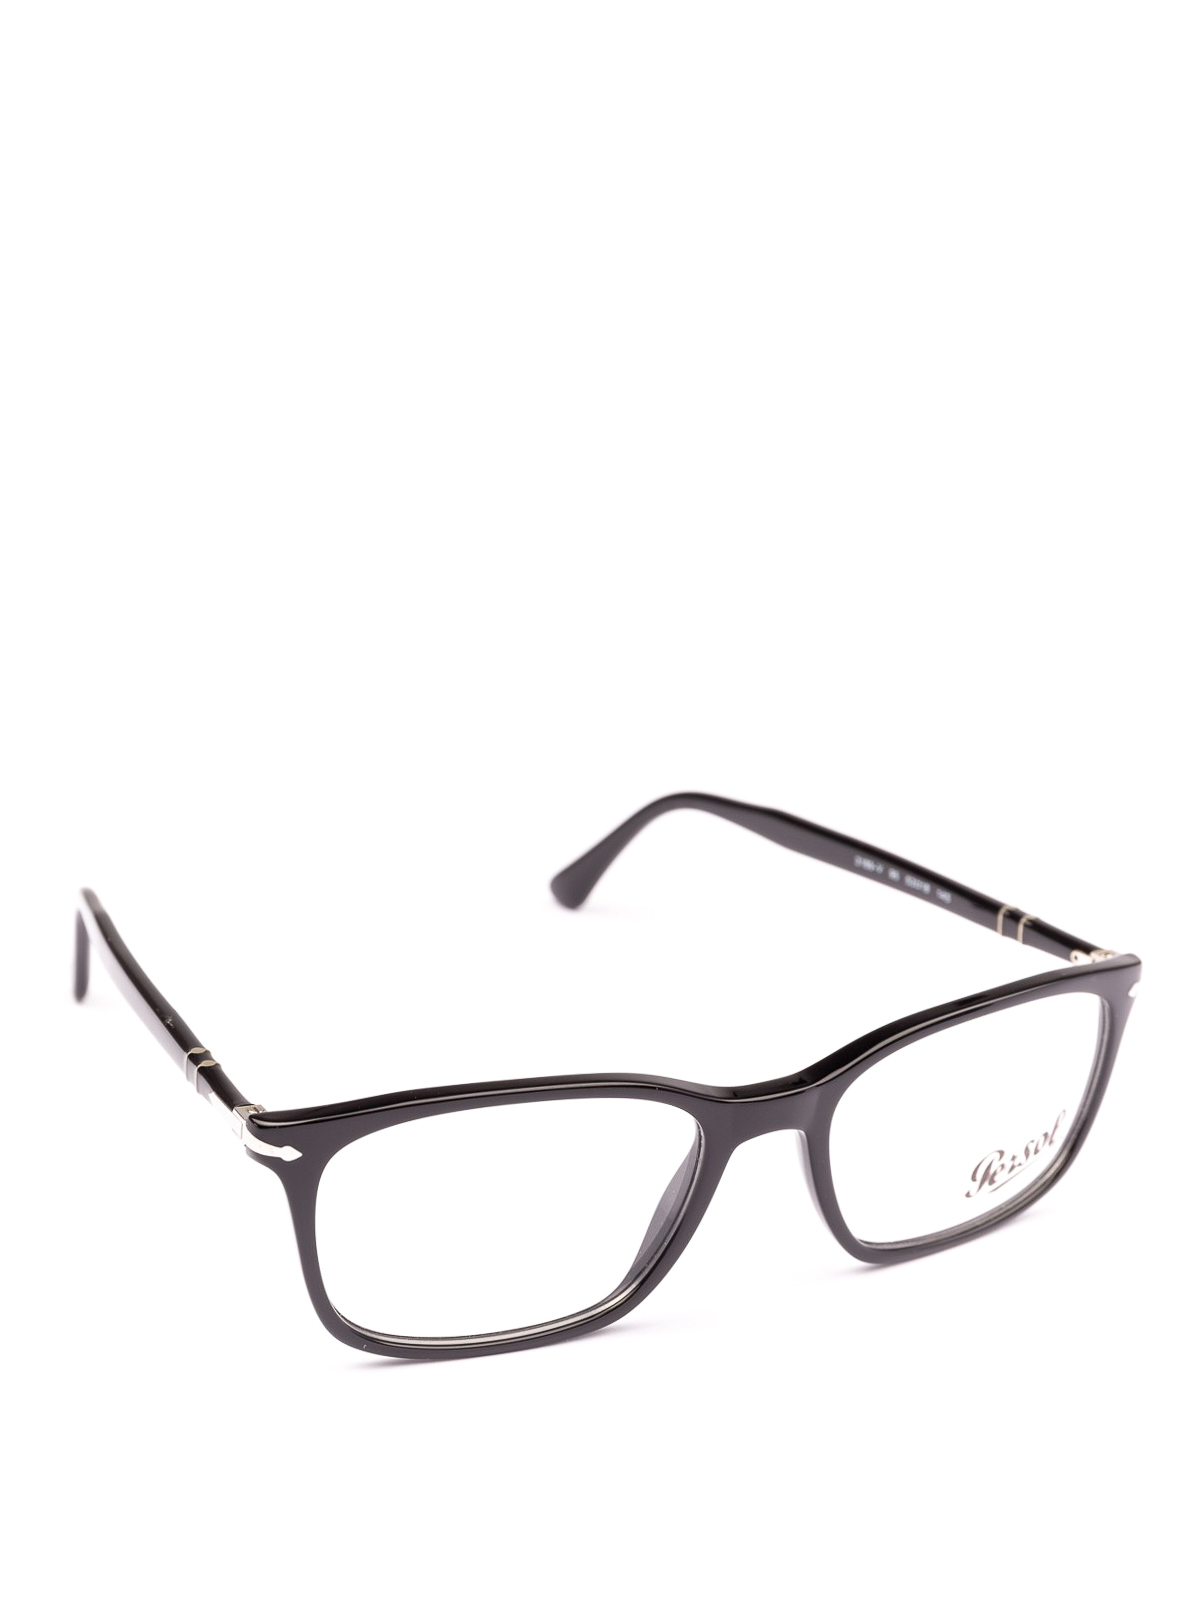 Glasses Persol - Token black full rim optical glasses - PO3189V95